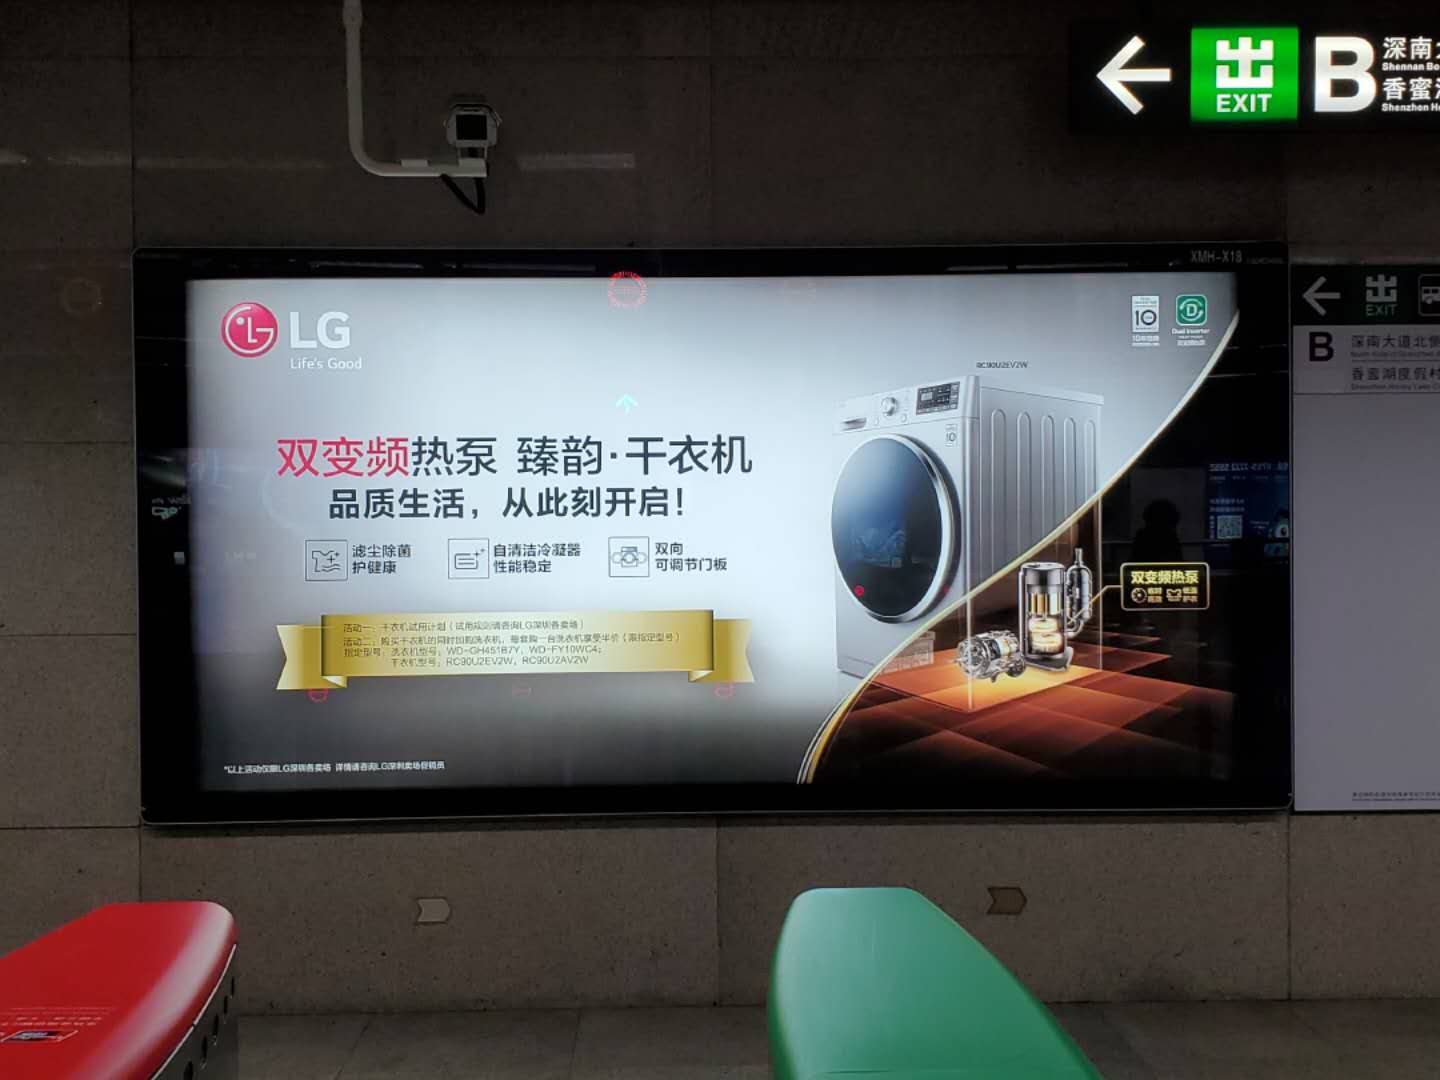 深圳地铁广告设计时的注意事项